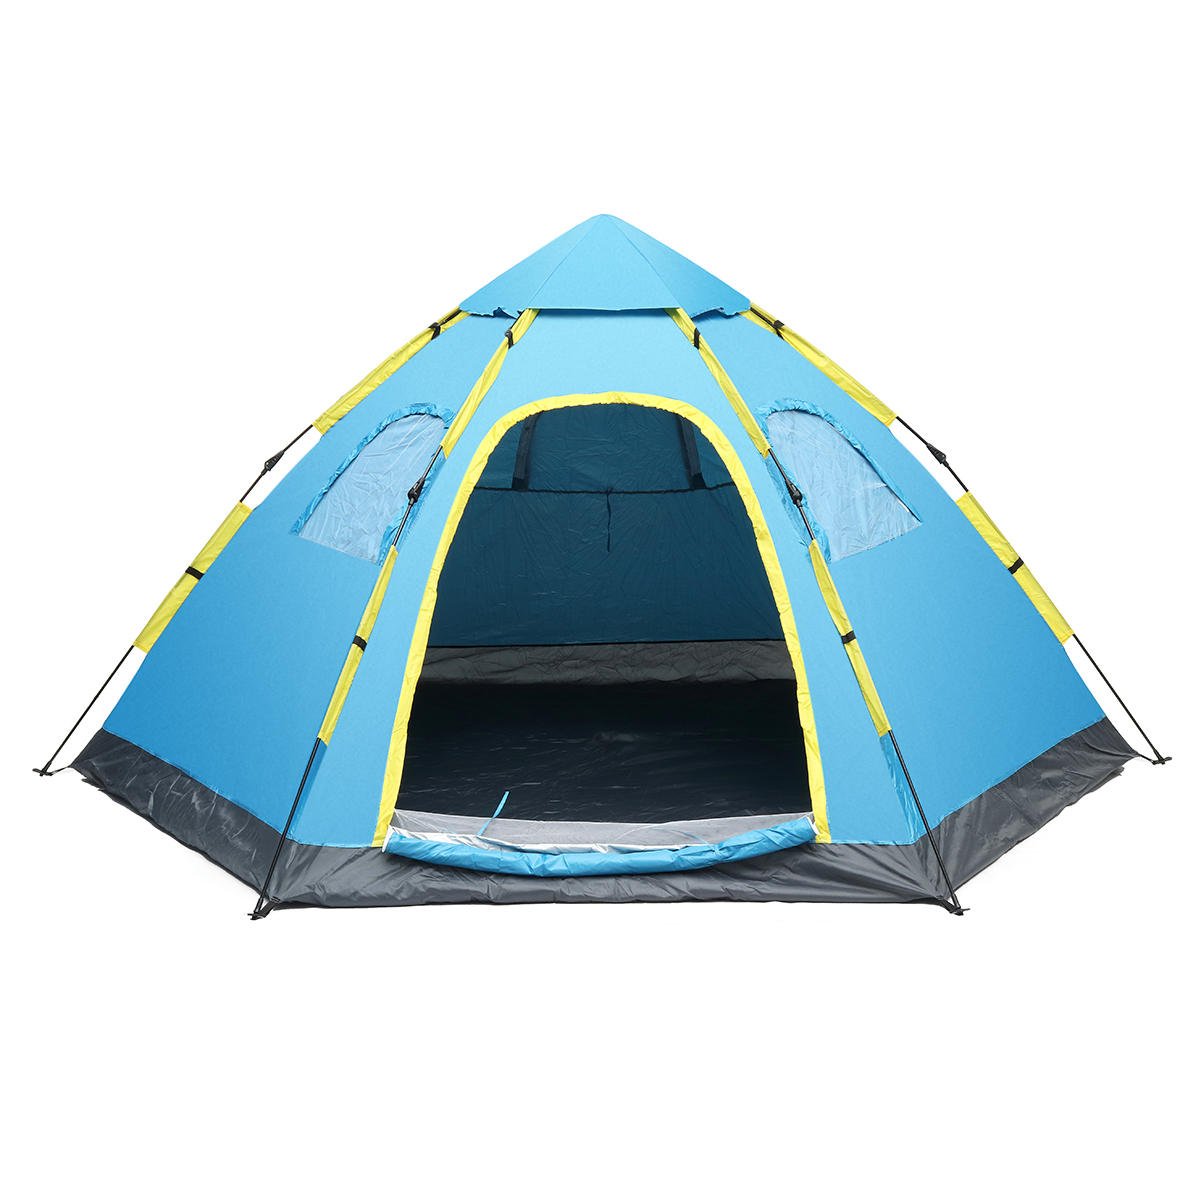 Tenda automatica per 5-8 persone, impermeabile e resistente ai raggi UV, ideale per il campeggio all'aperto, in spiaggia o in famiglia.